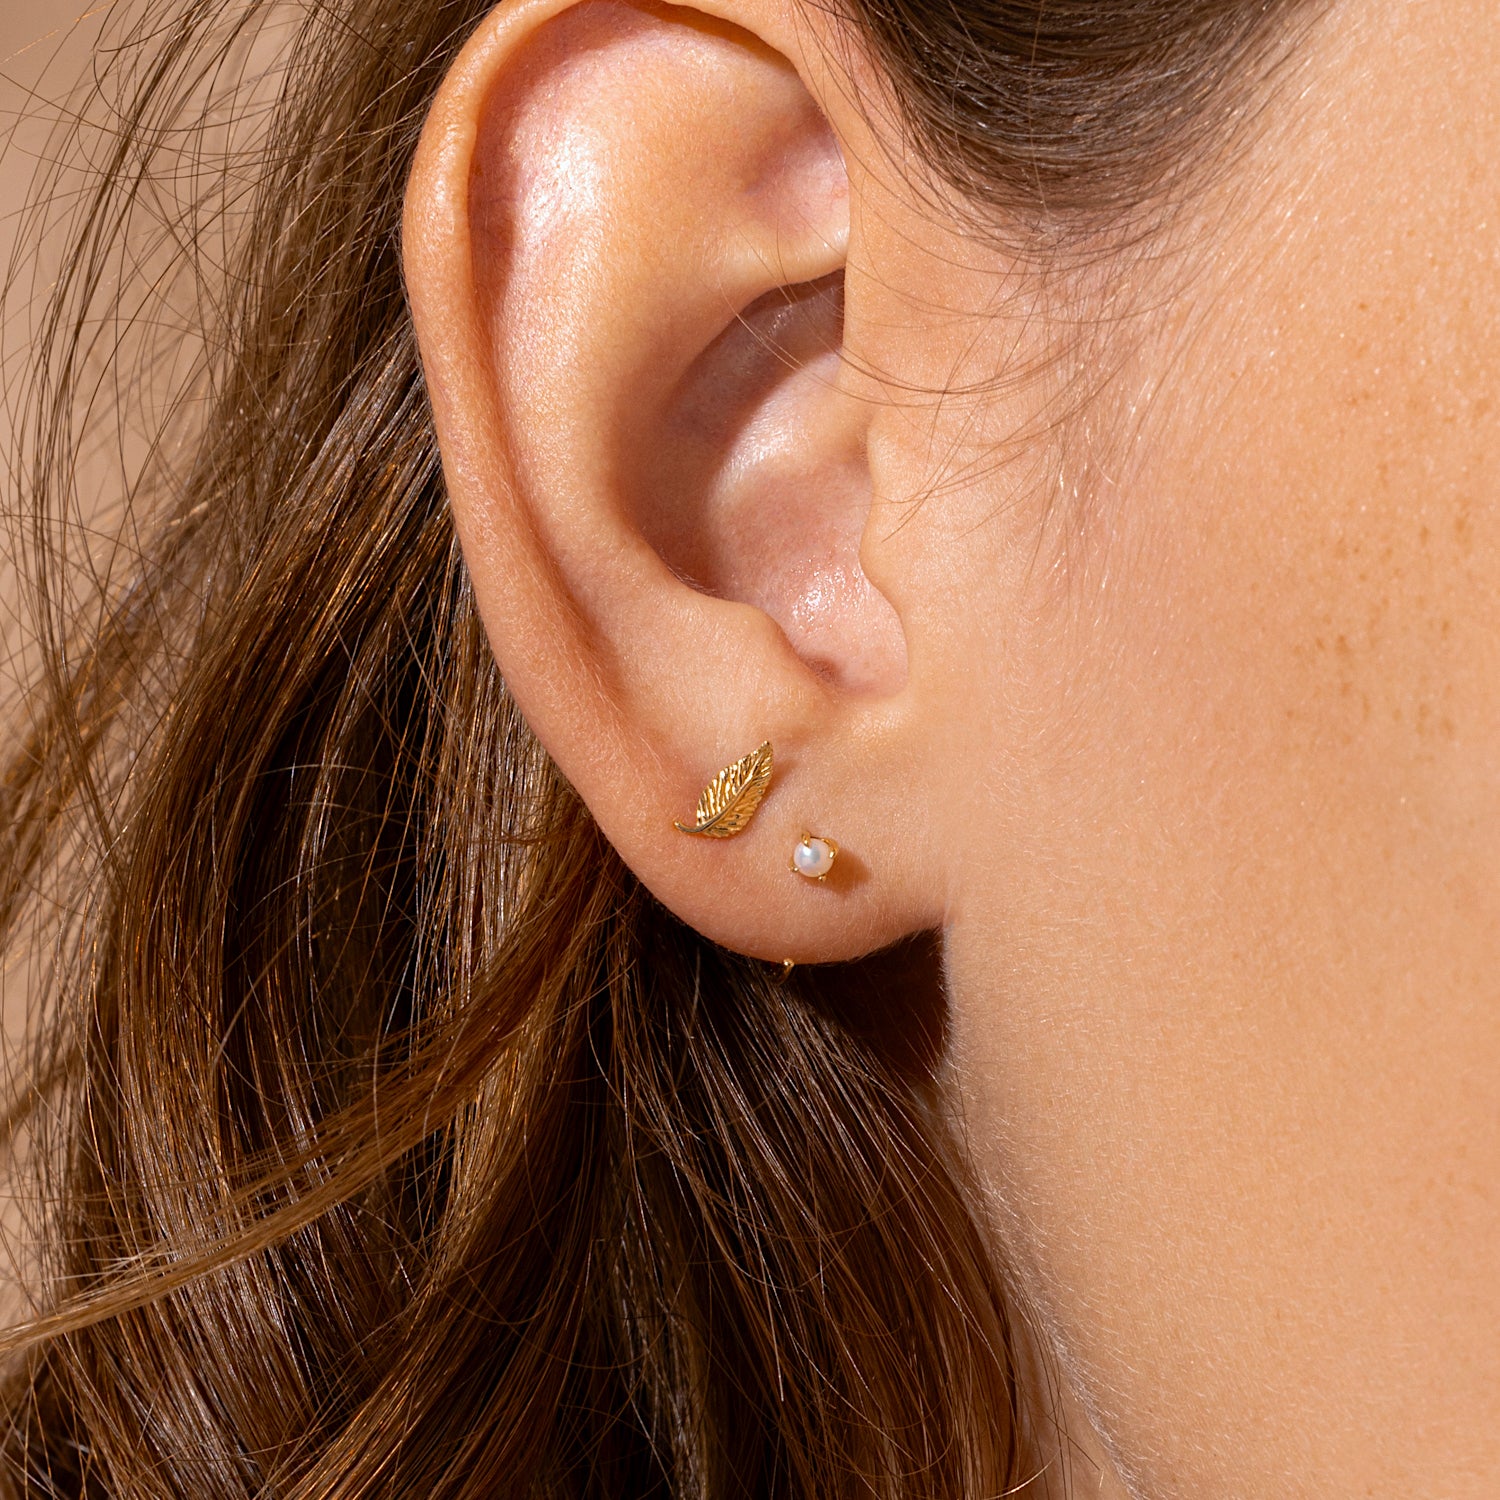 Stainless Steel Earring Backs for Studs Large Heavy Earring Support Backs